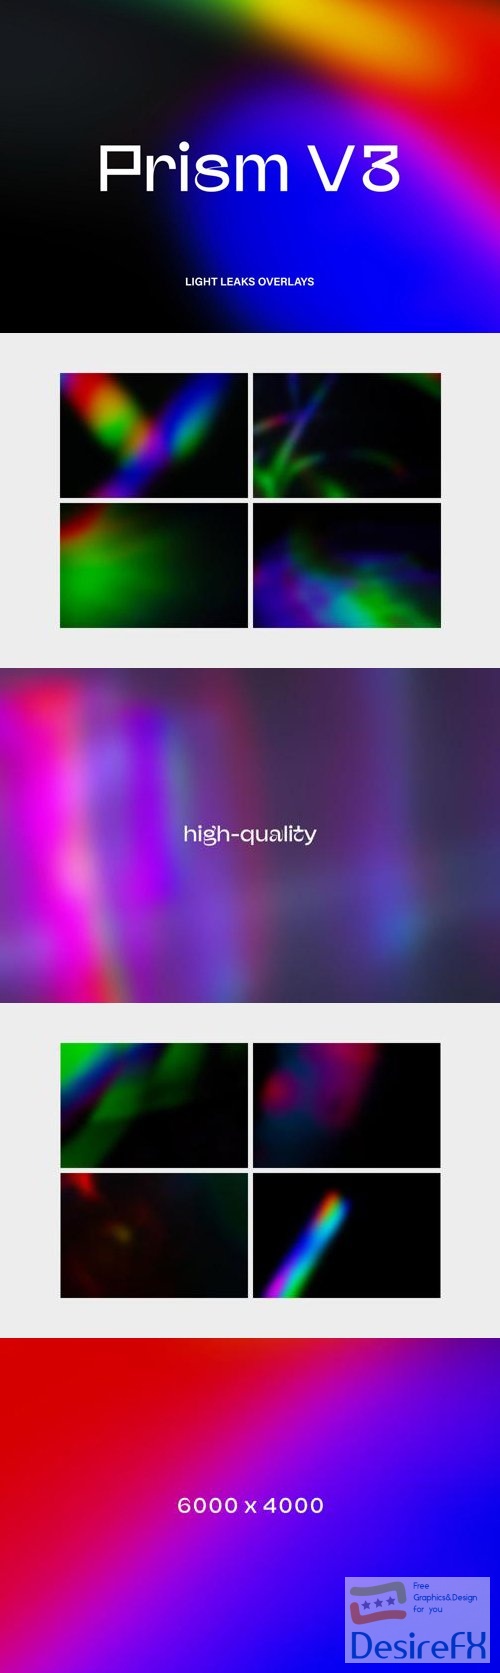 Prism V3 - Light Leaks Overlays